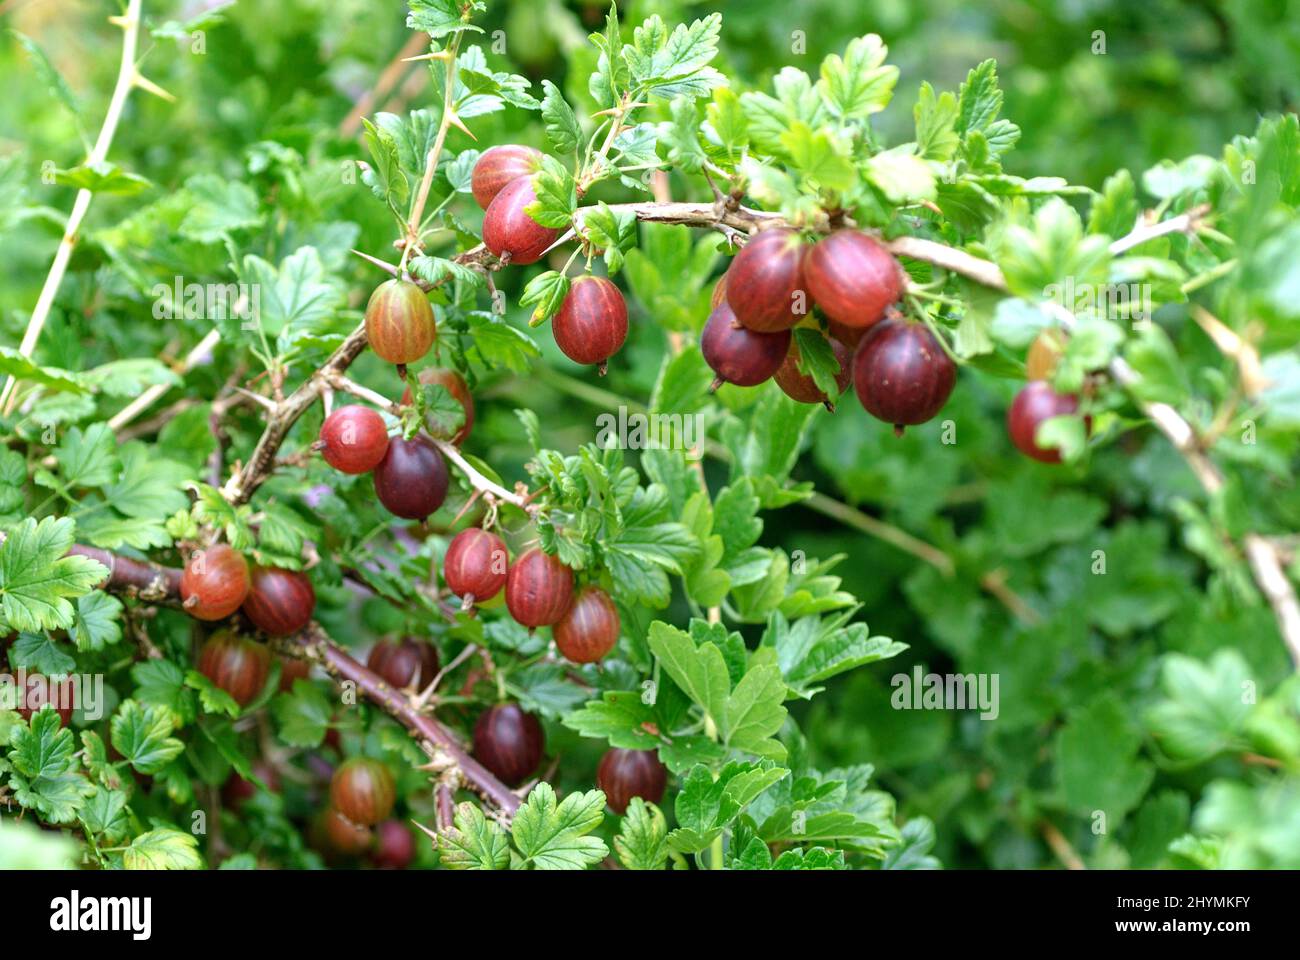 wild gooseberry, European gooseberry (Ribes uva-crispa 'Remarka', Ribes uva-crispa Remarka), gooseberries on a branch, cultivar Remarka Stock Photo